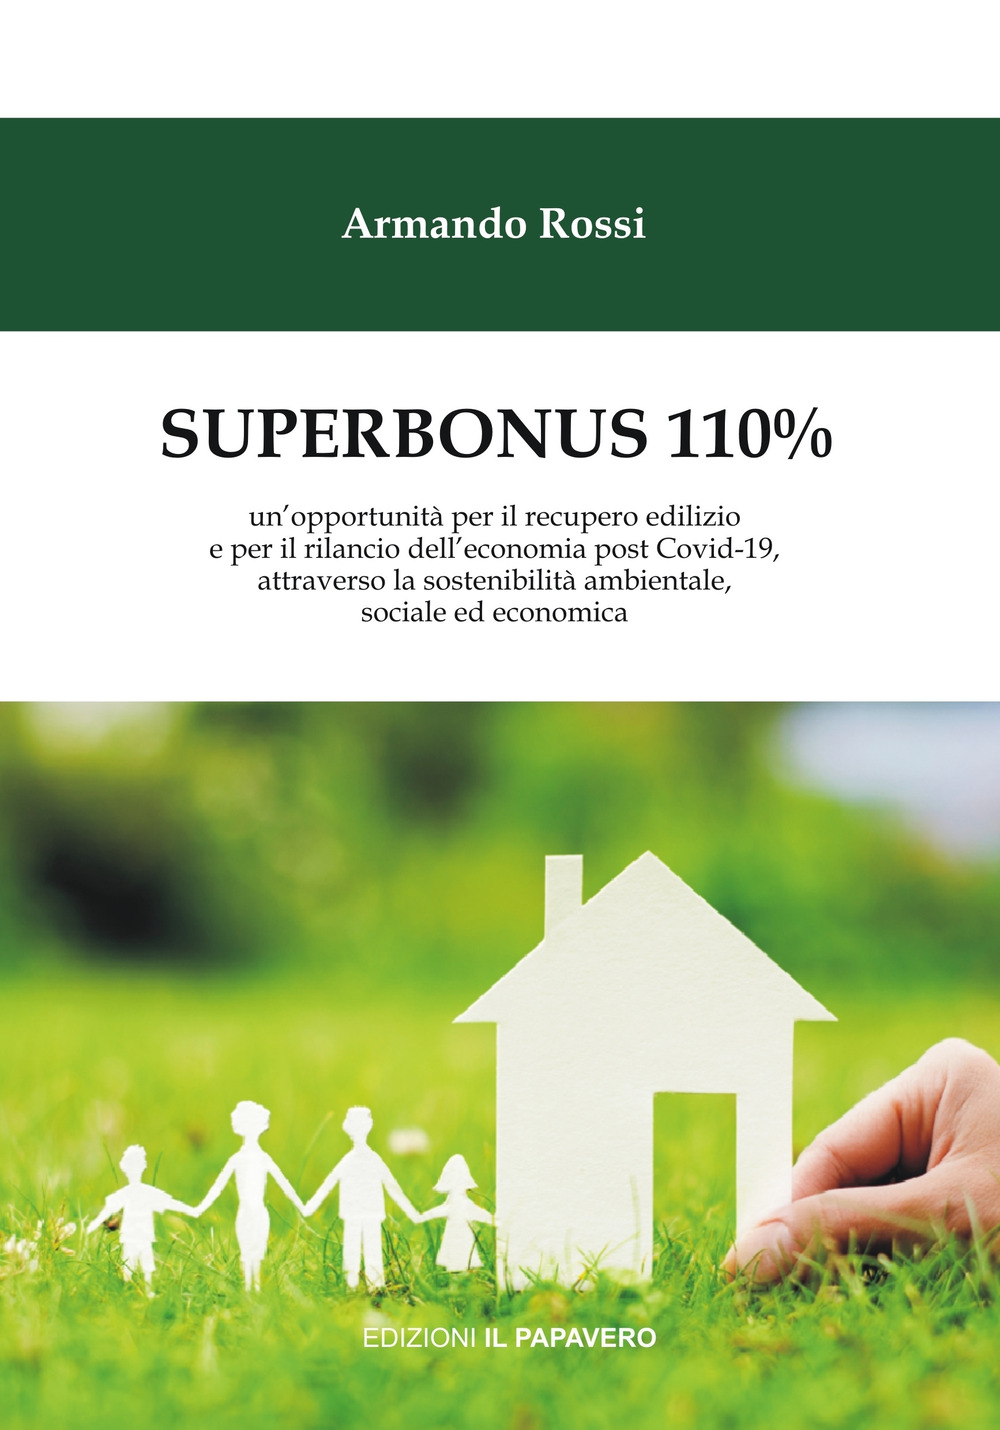 Superbonus 110%. un'opportunità per il recupero edilizio e per il rilancio dell'economia post Covid-19, attraverso la sostenibilità ambientale, sociale ed economica